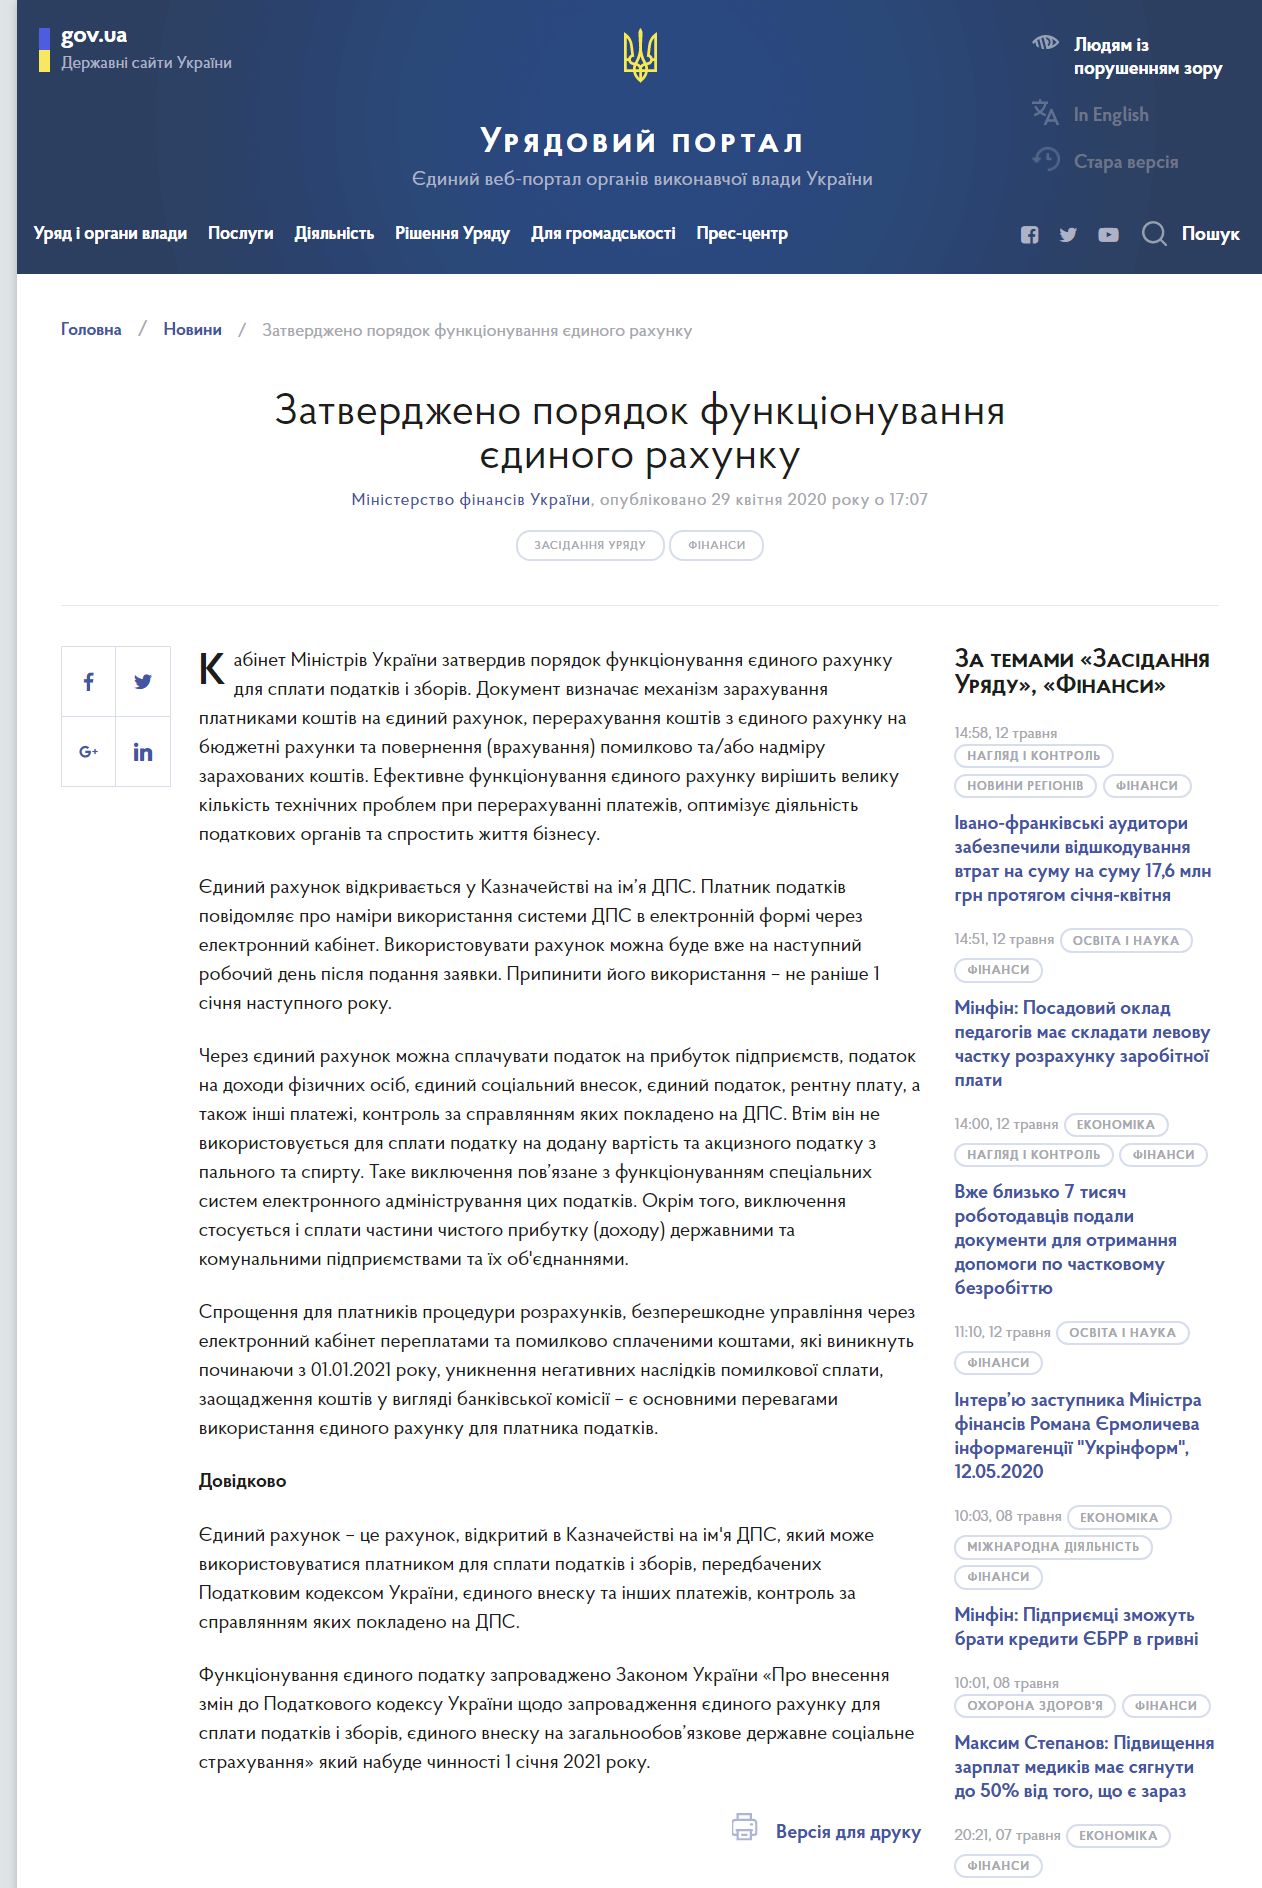 https://www.kmu.gov.ua/news/zatverdzheno-poryadok-funkcionuvannya-yedinogo-rahunku